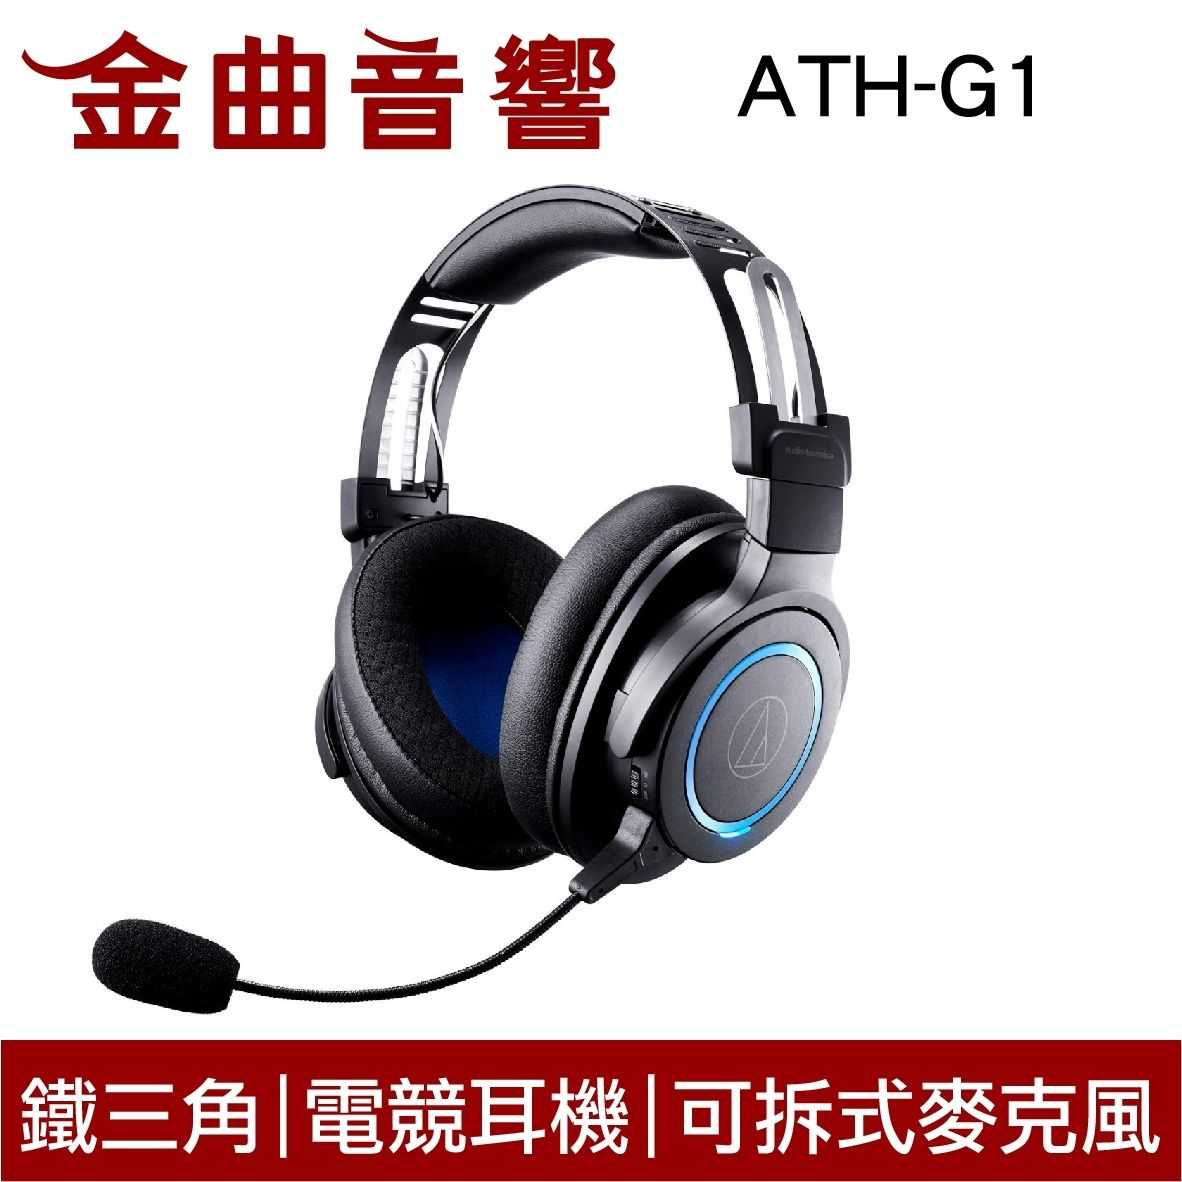 鐵三角 ATH-G1 耳機